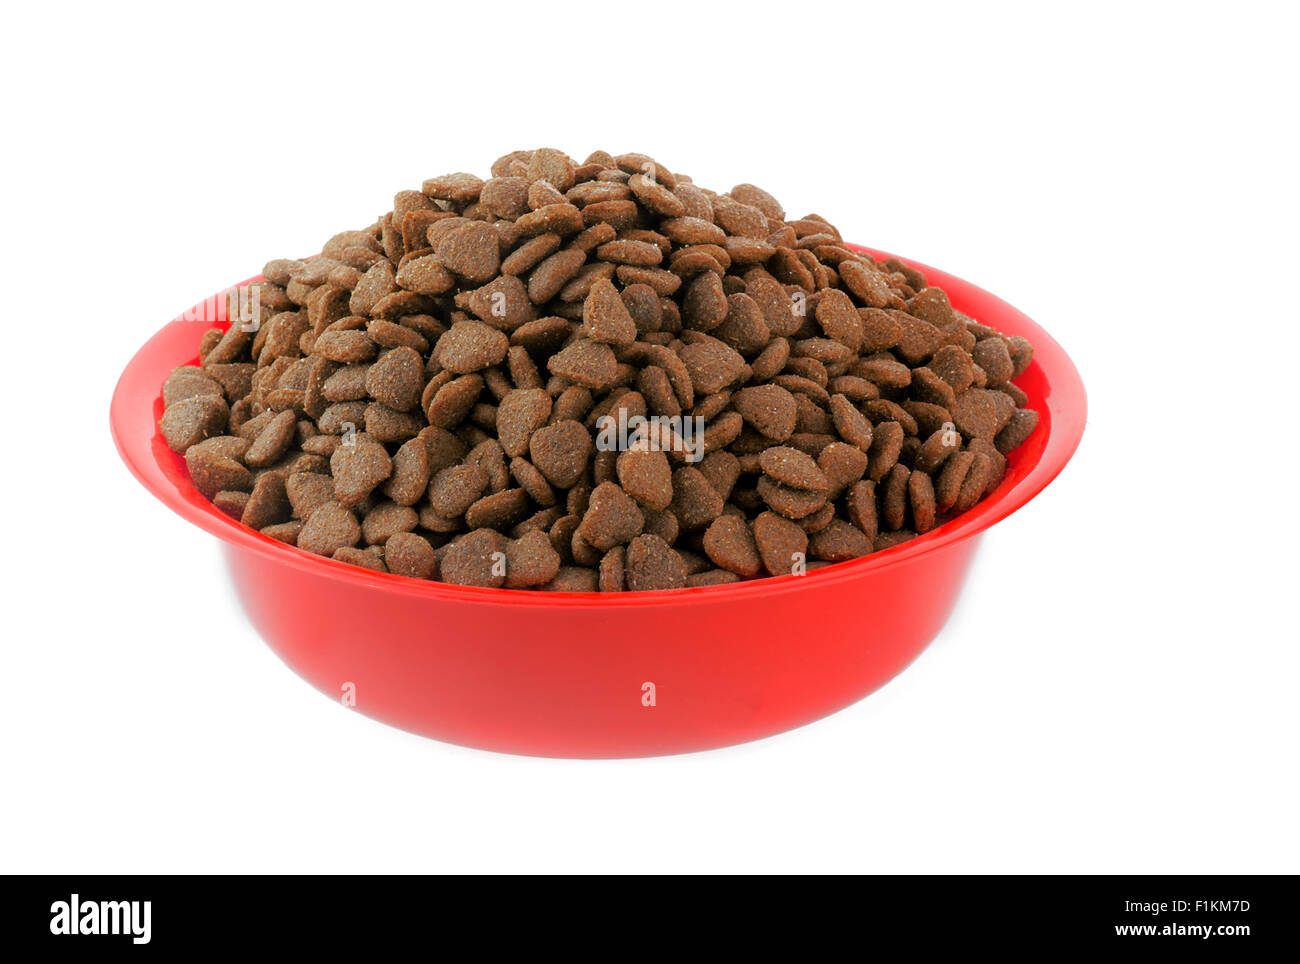 El perro o gato sano húmedo los alimentos en un recipiente de alimentación animal Foto de stock